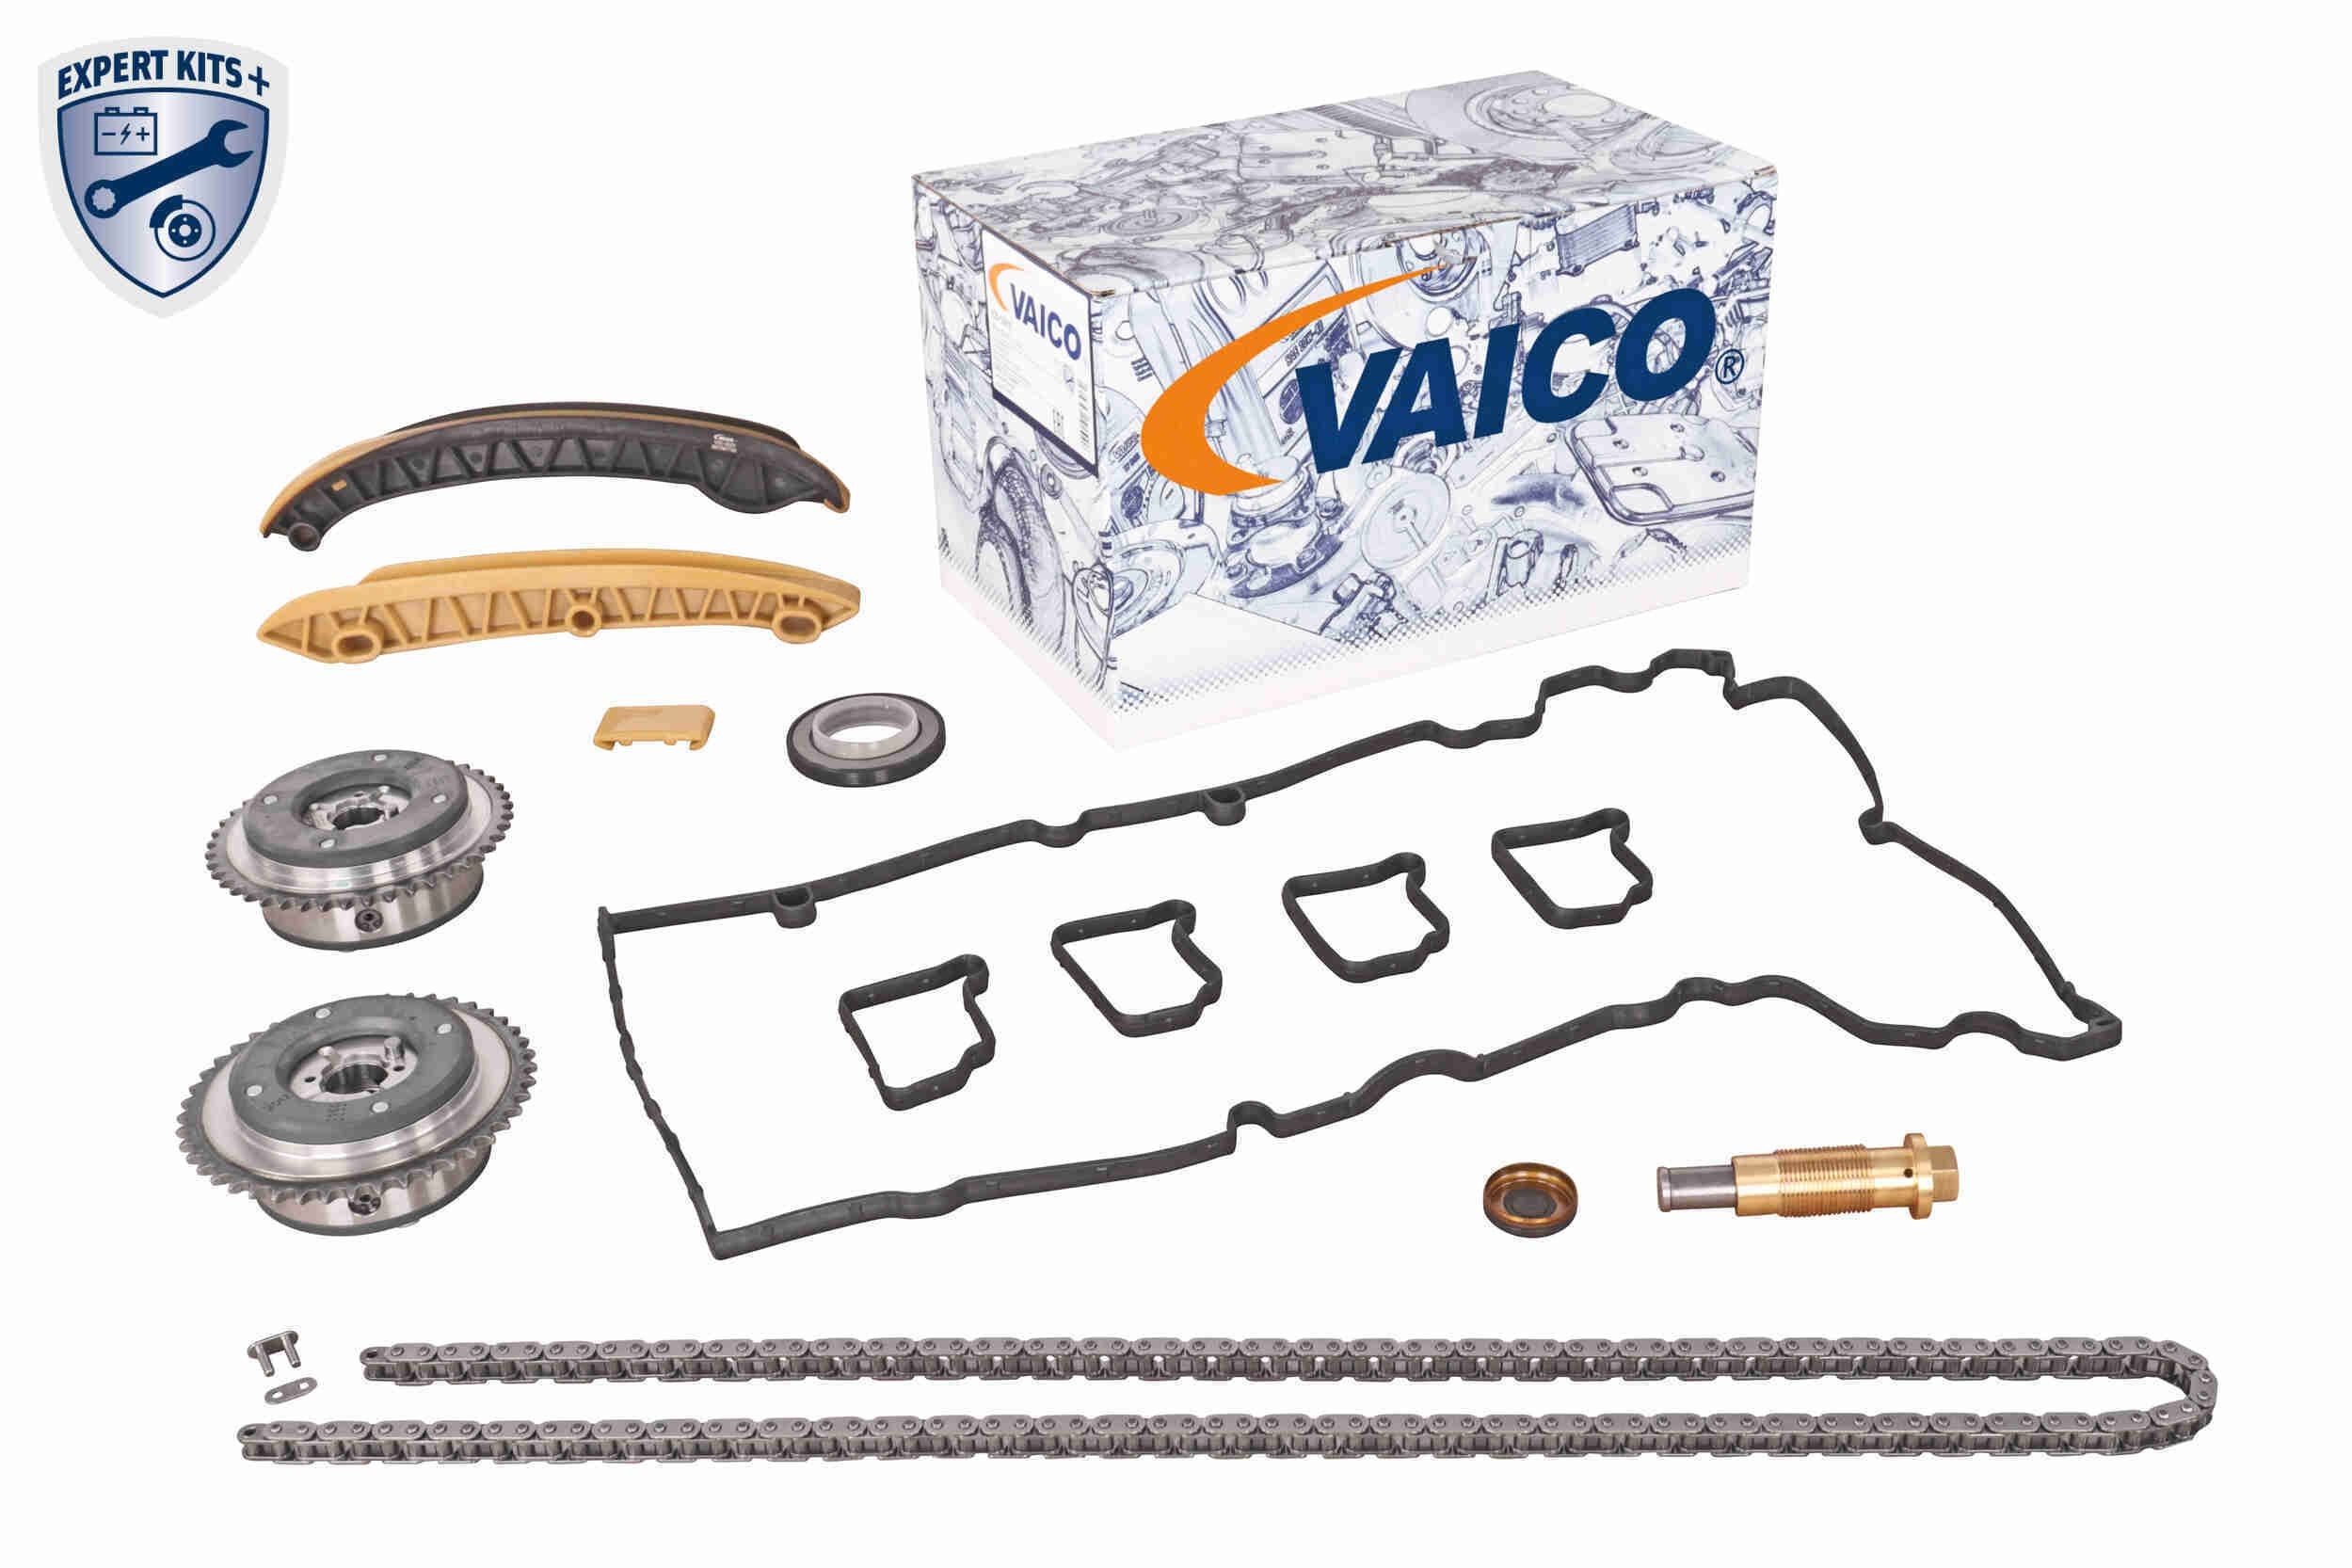 V30-3209 VAICO Nockenwellenversteller Auslassseite V30-3209 ❱❱❱ Preis und  Erfahrungen